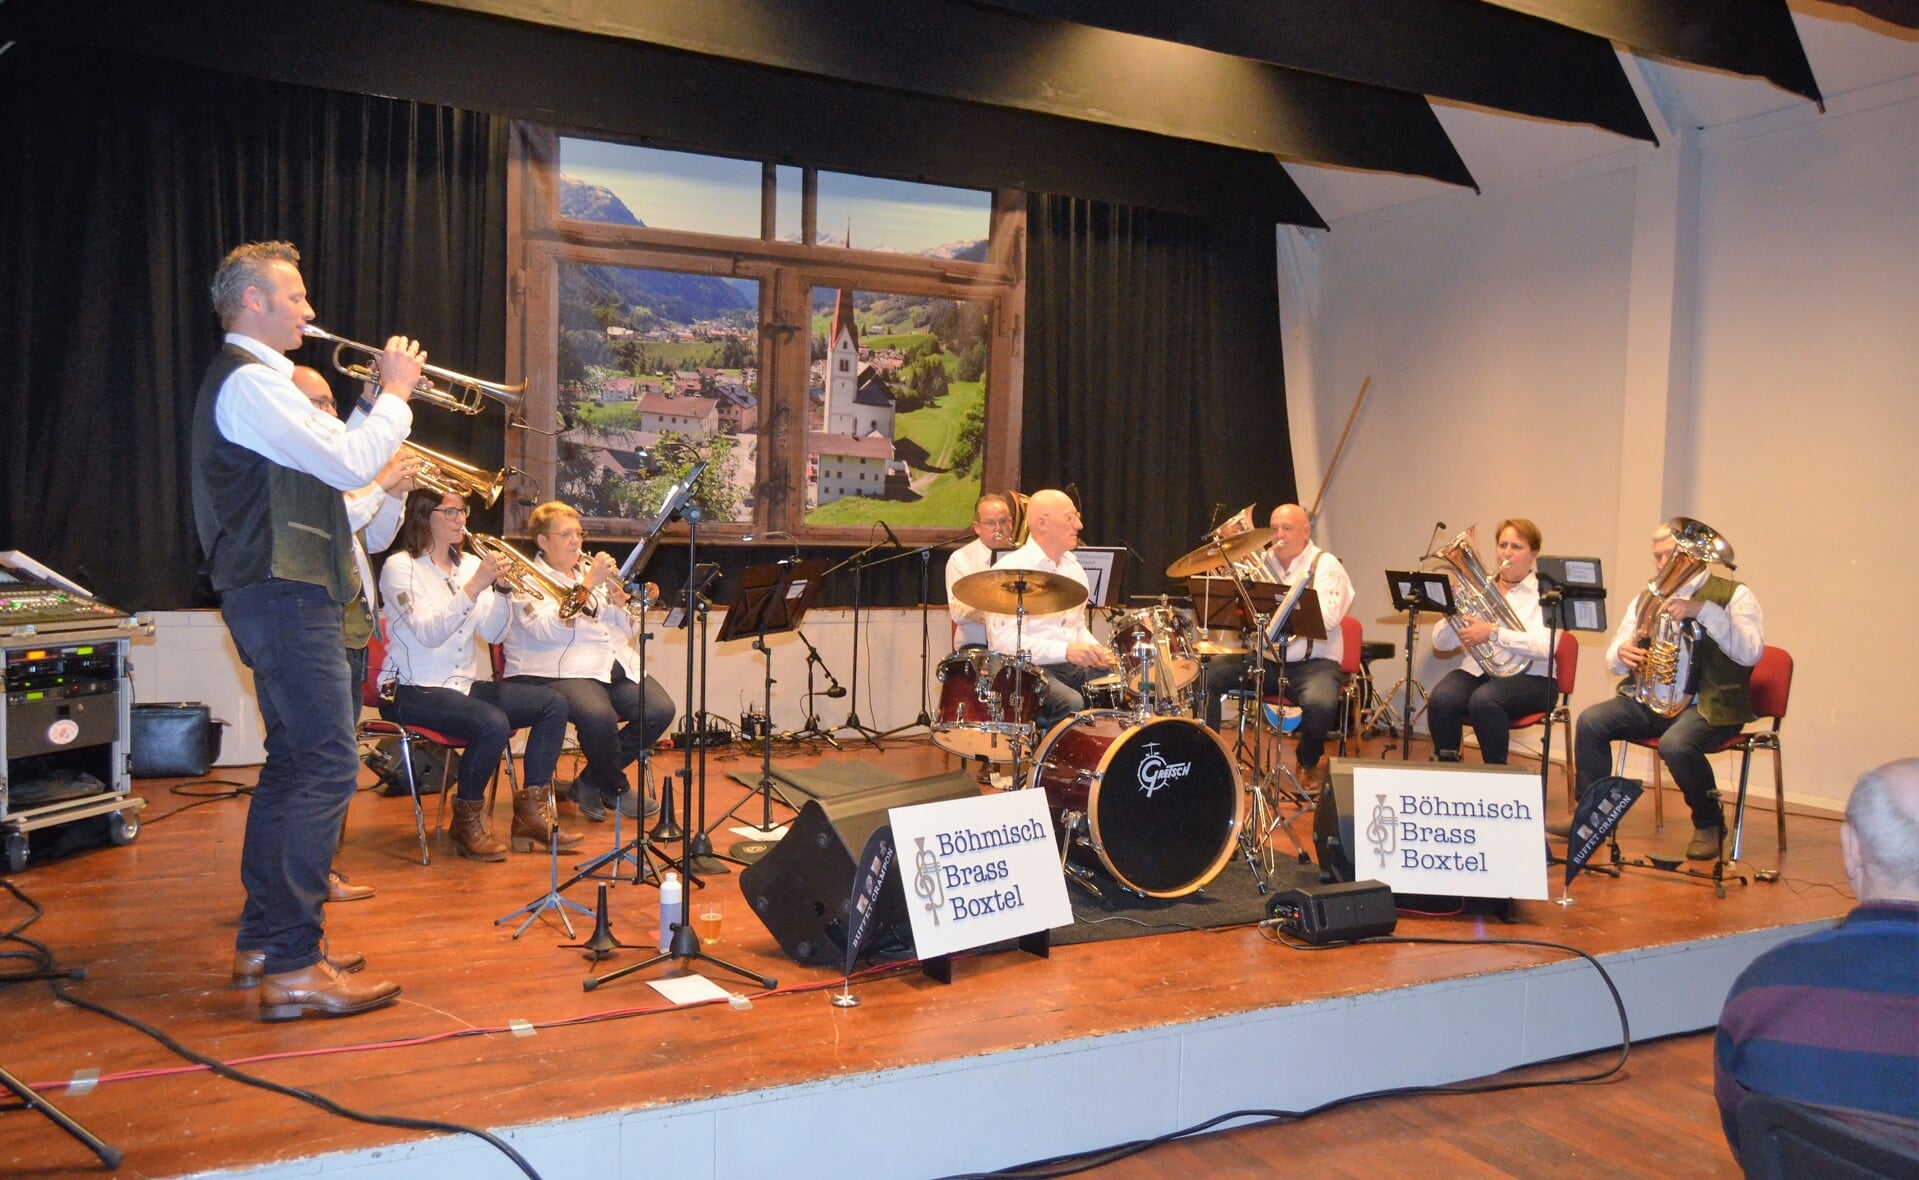 Böhmisch Brass Boxtel debuteerde in maart met een eerste optreden in gemeenschapshuis Orion in Lennisheuvel.